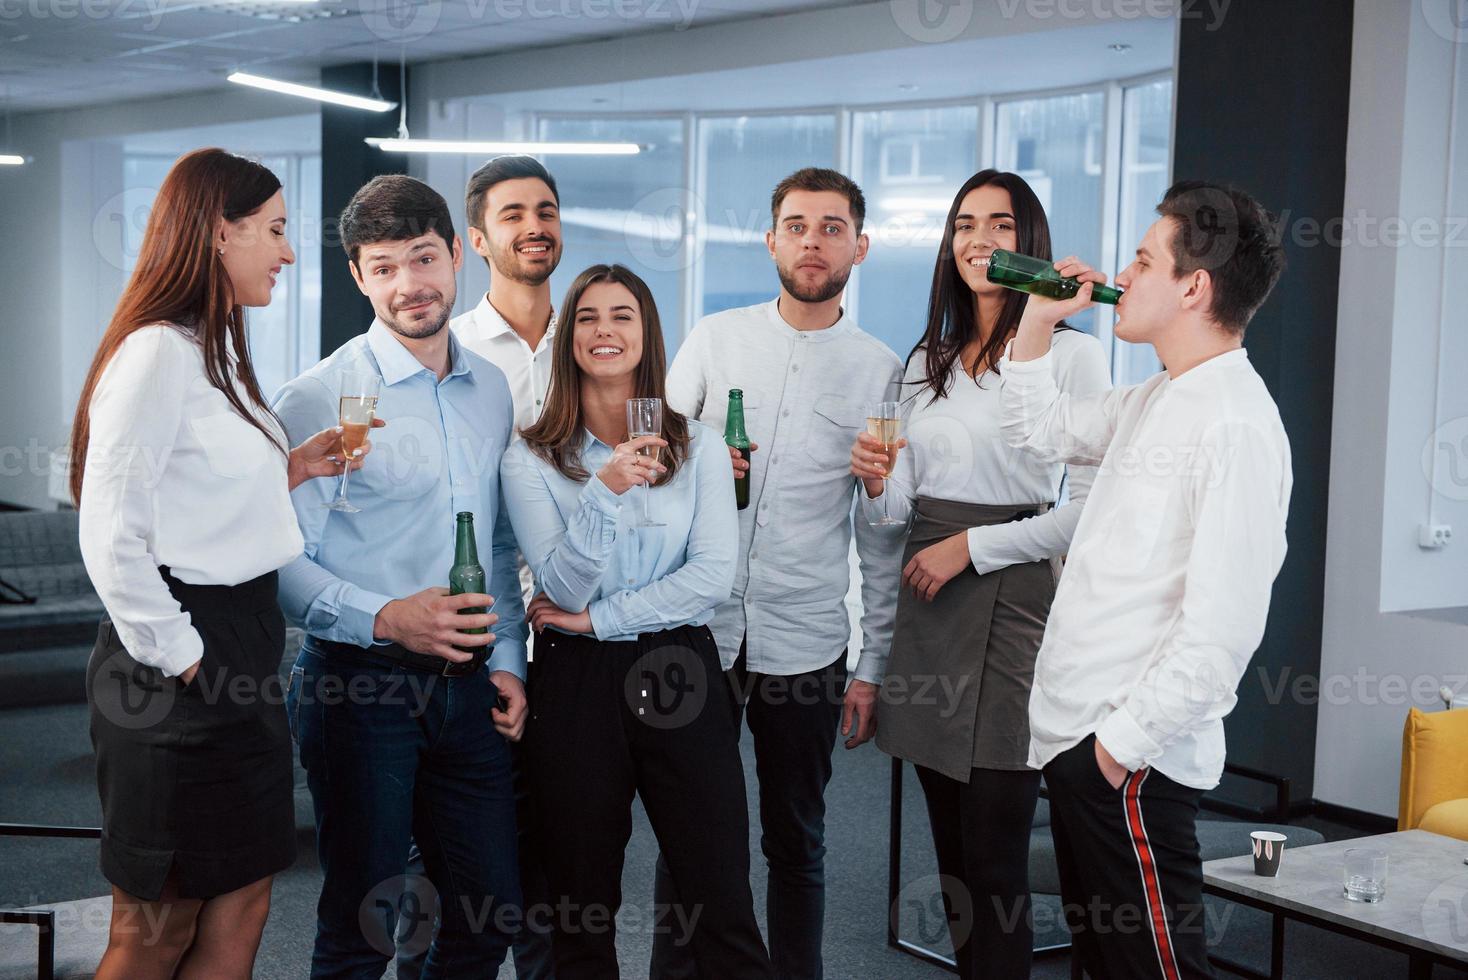 vila tillsammans efter jobbet. foto av ungt team i klassiska kläder som håller drinkar i det moderna bra upplysta kontoret